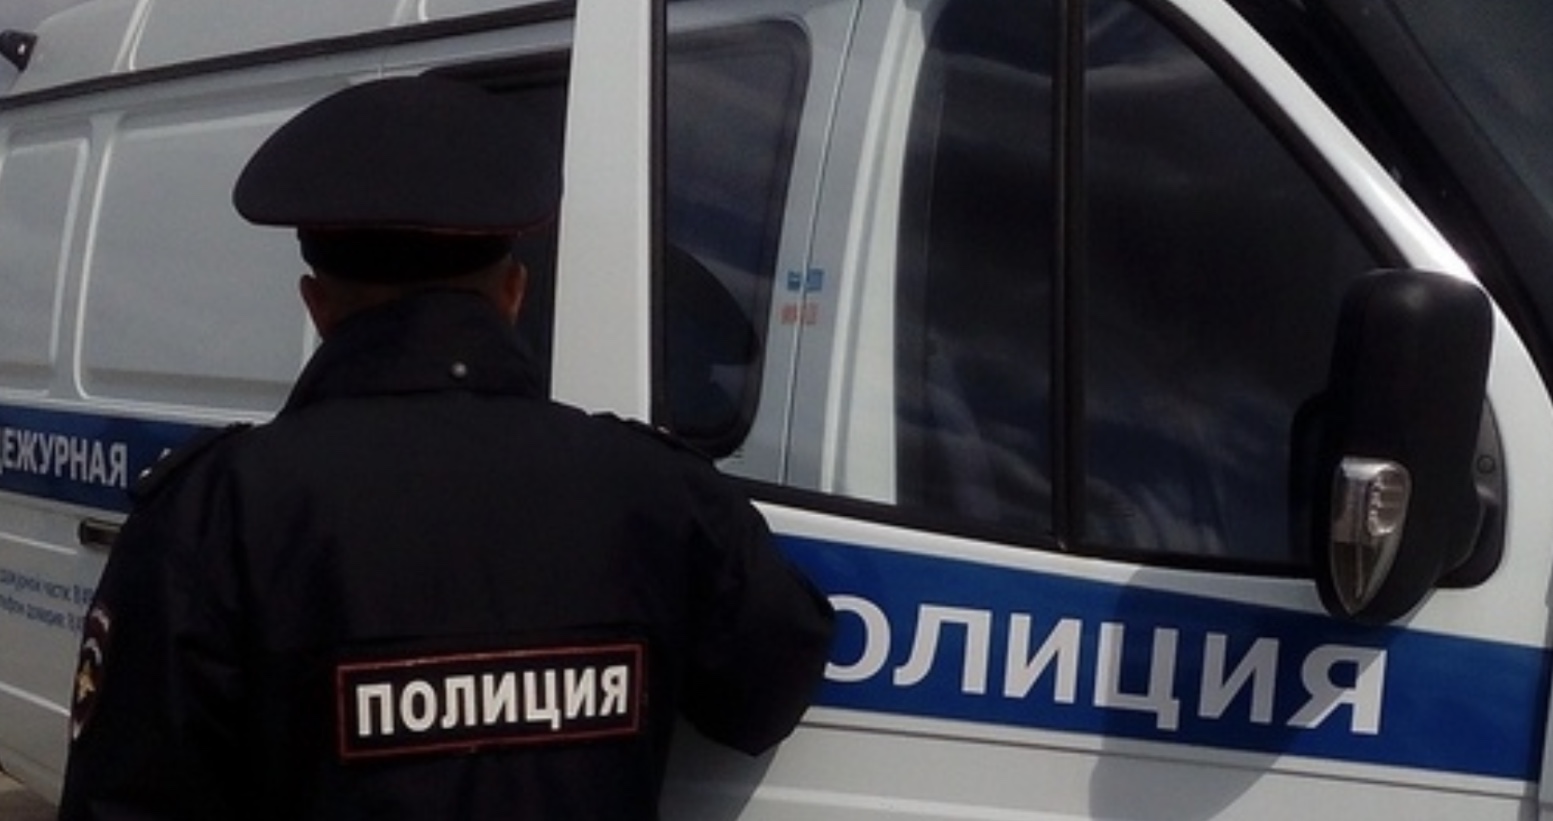 Полиция разбирается в обстоятельствах гибели трех жителей Ивановской области